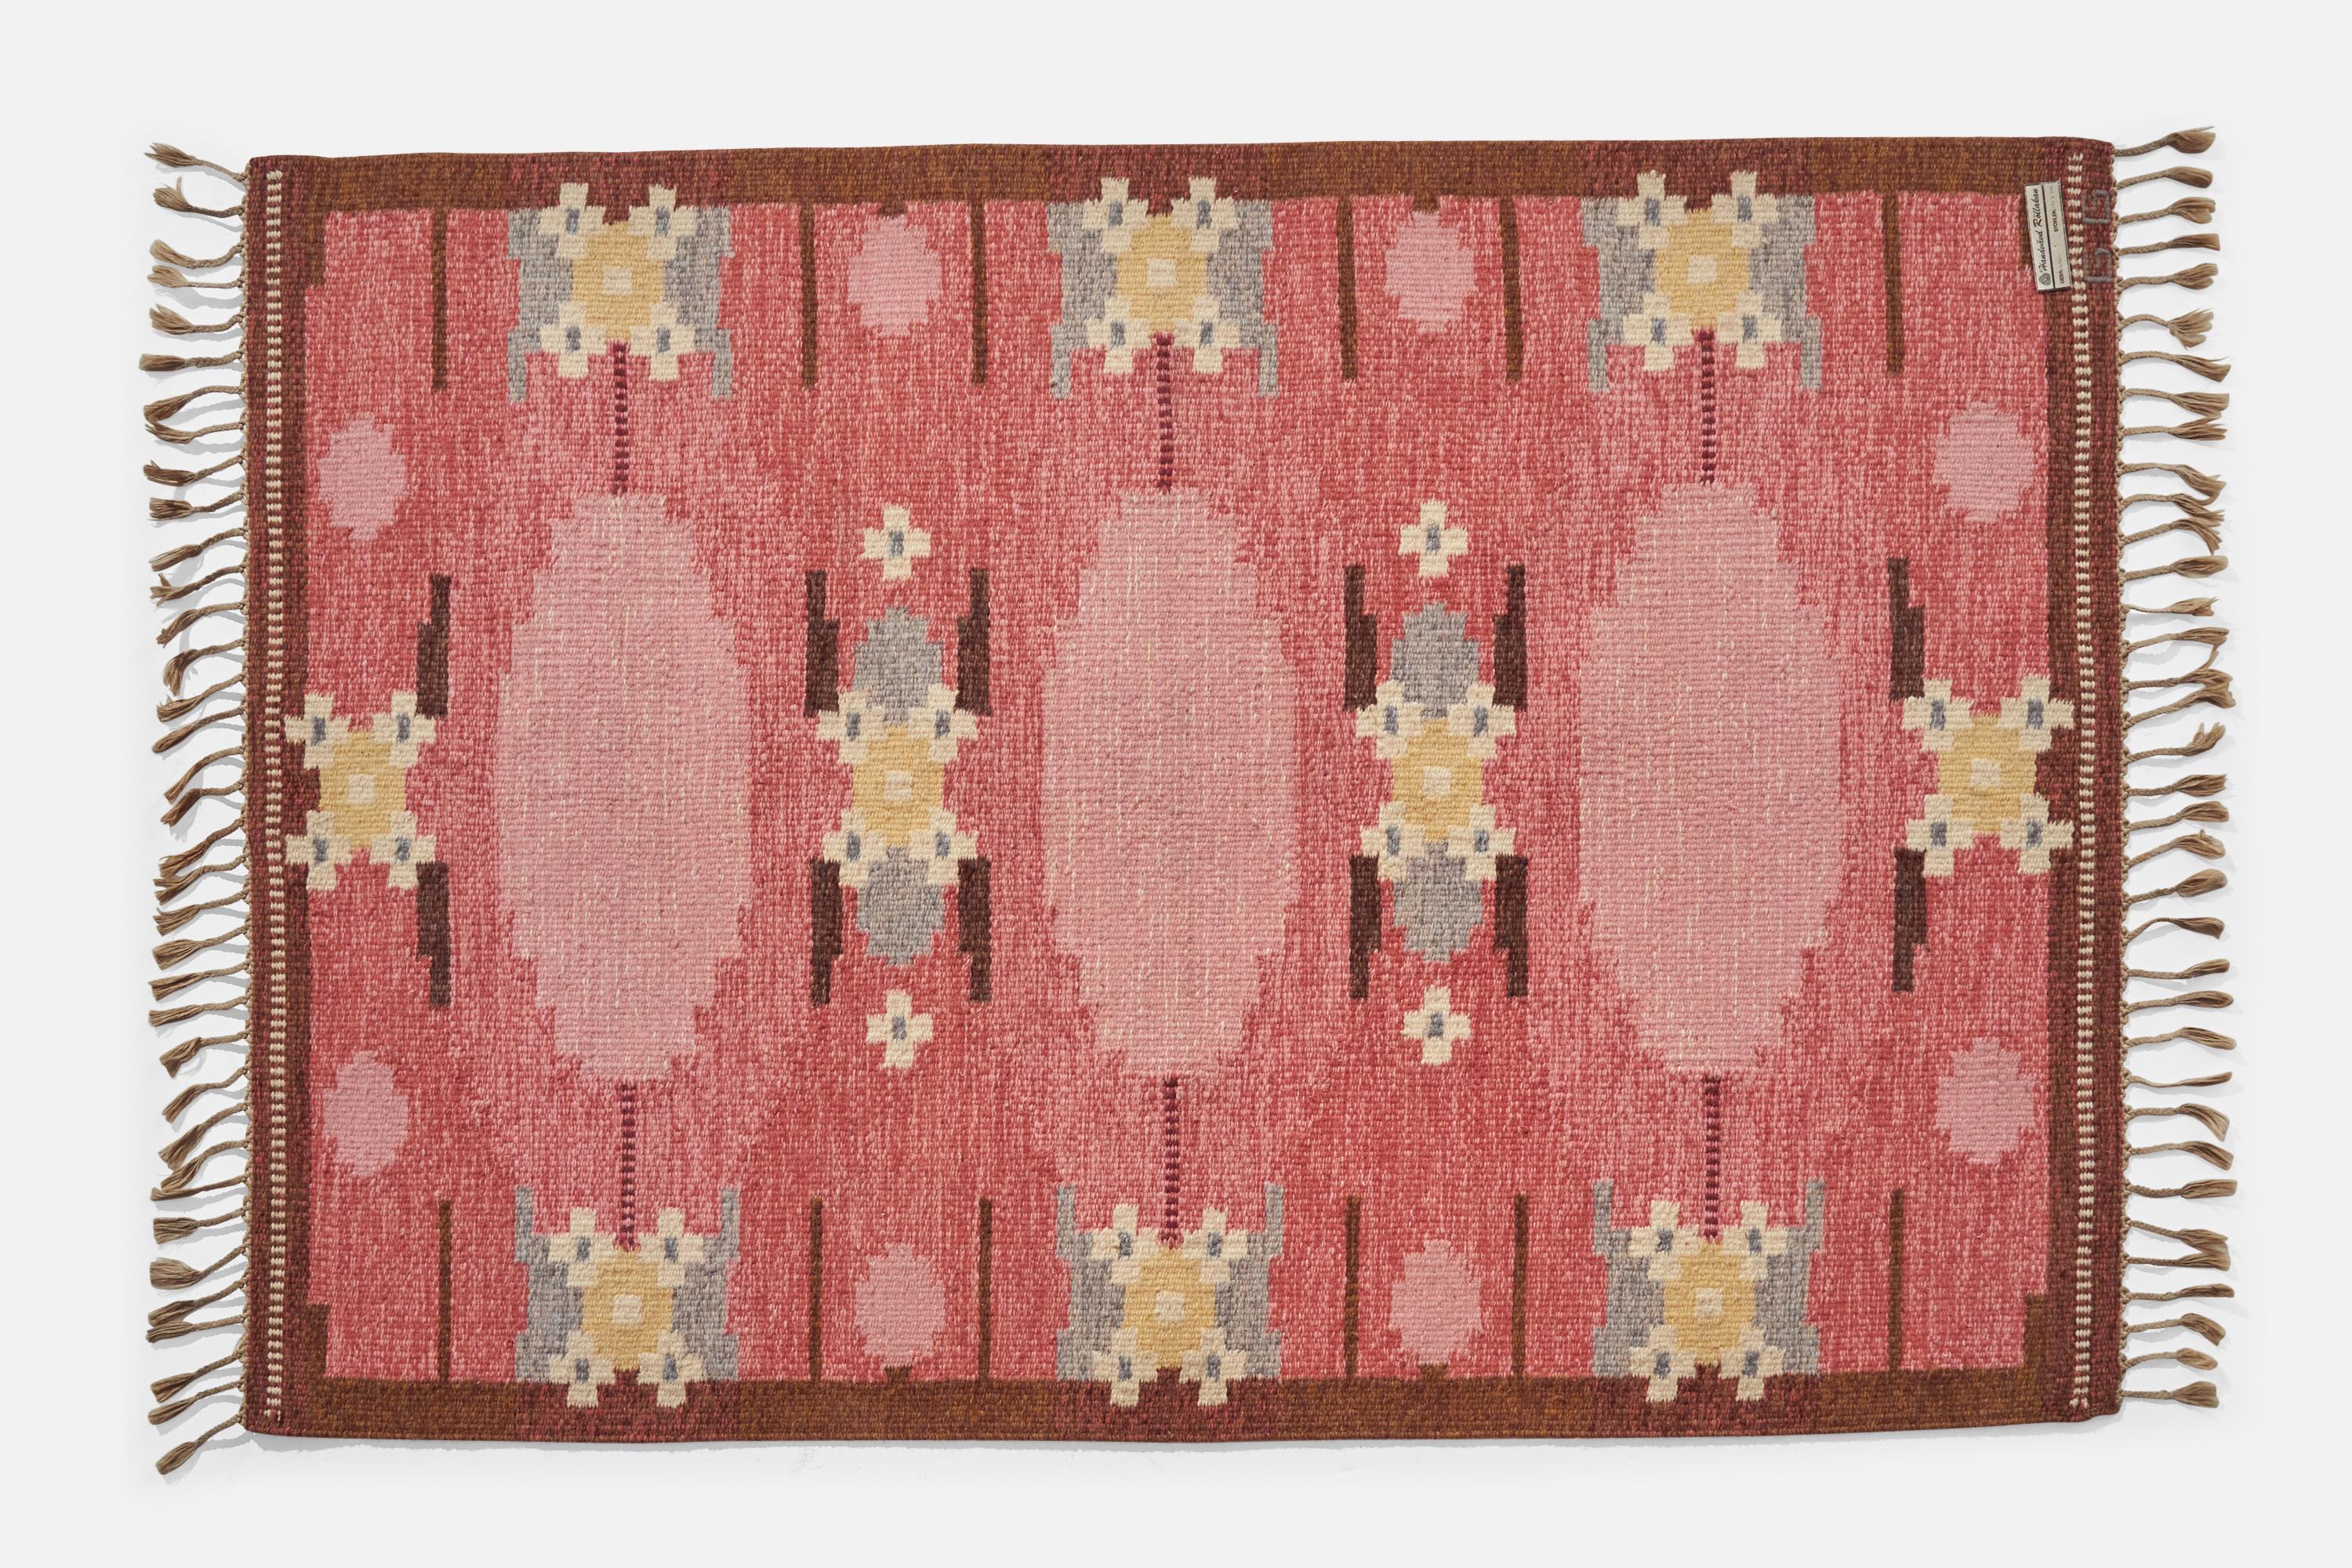 Tapis en laine à tissage plat rose, marron et jaune, conçu et produit par Gitt Grännsjö-Carlsson, Suède, c.C. 1950.